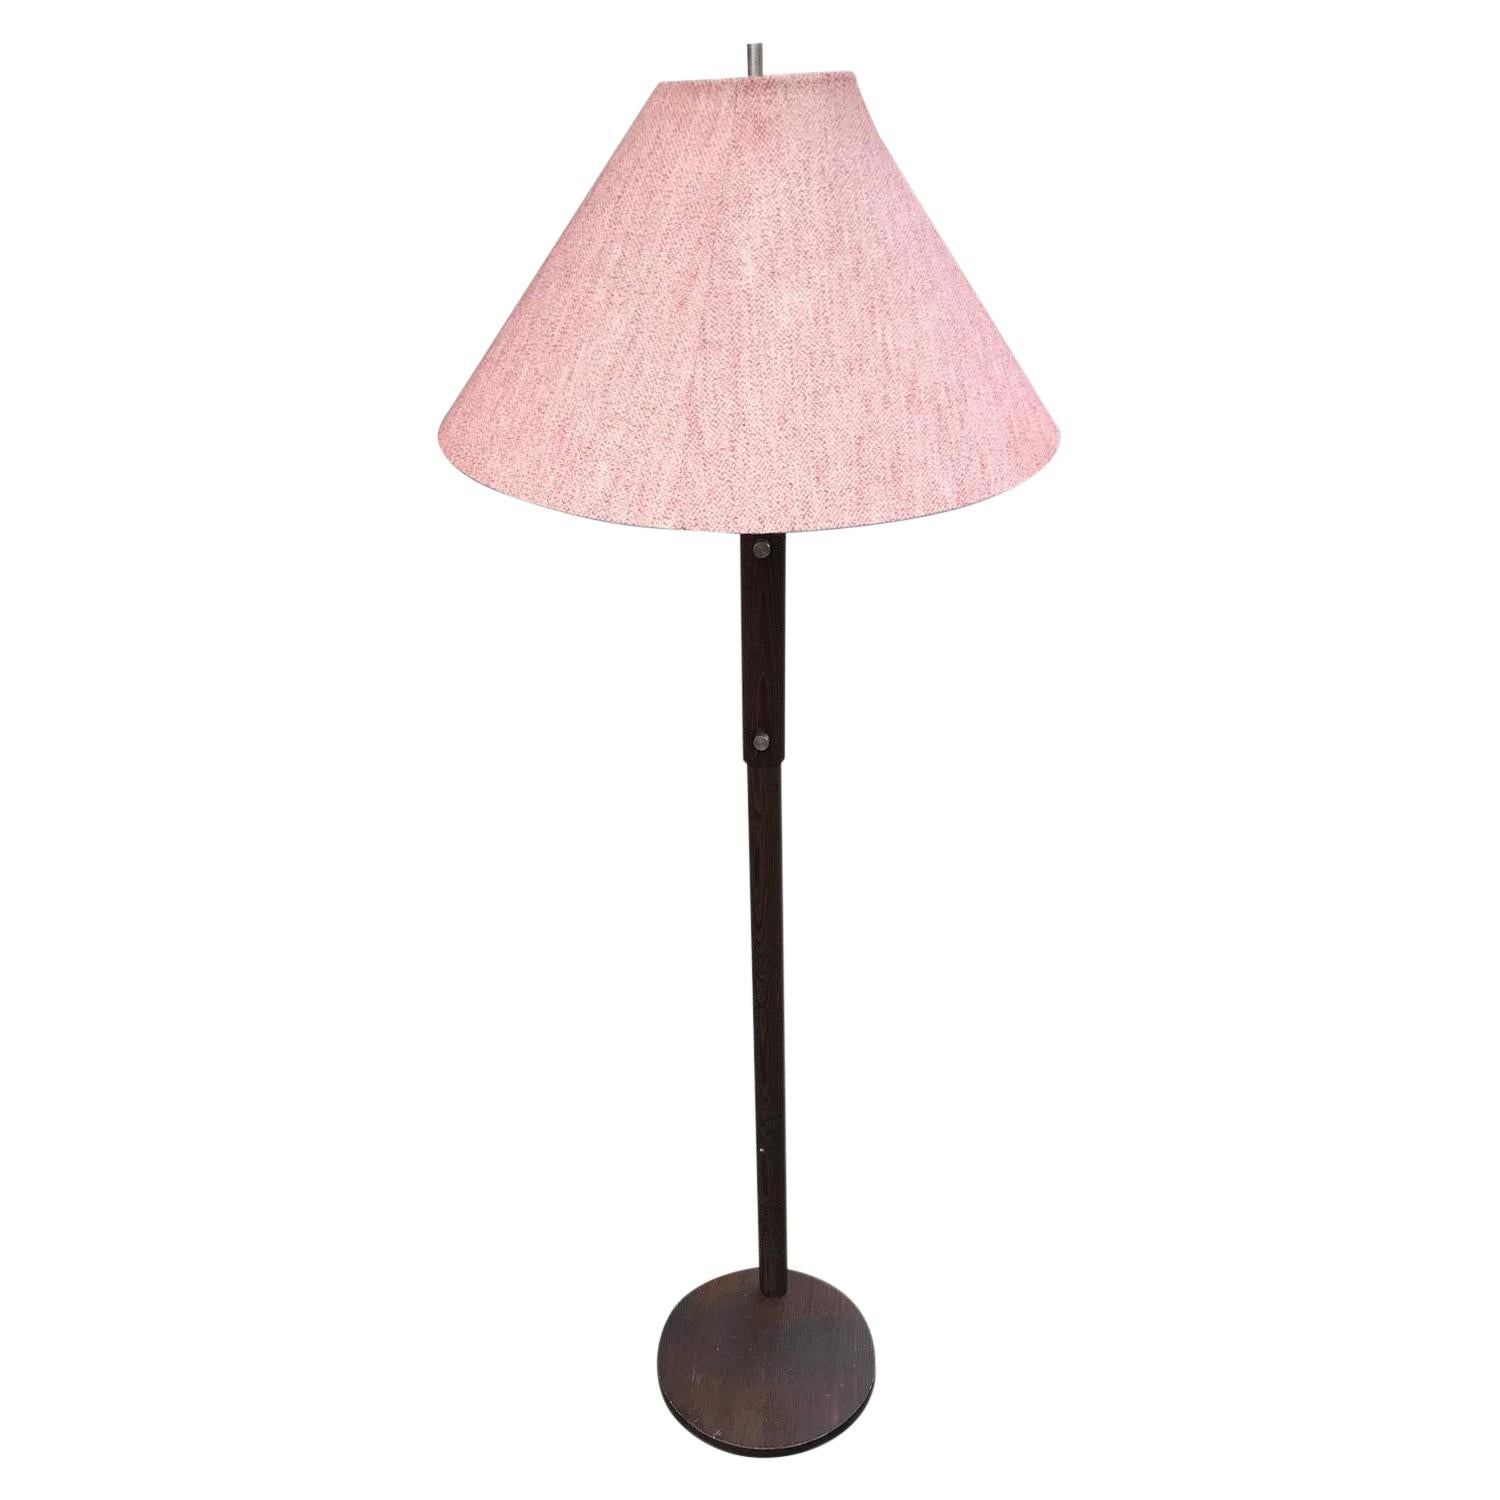 Midcentury Functionalistic Floor, Standing Lamp, 1950s